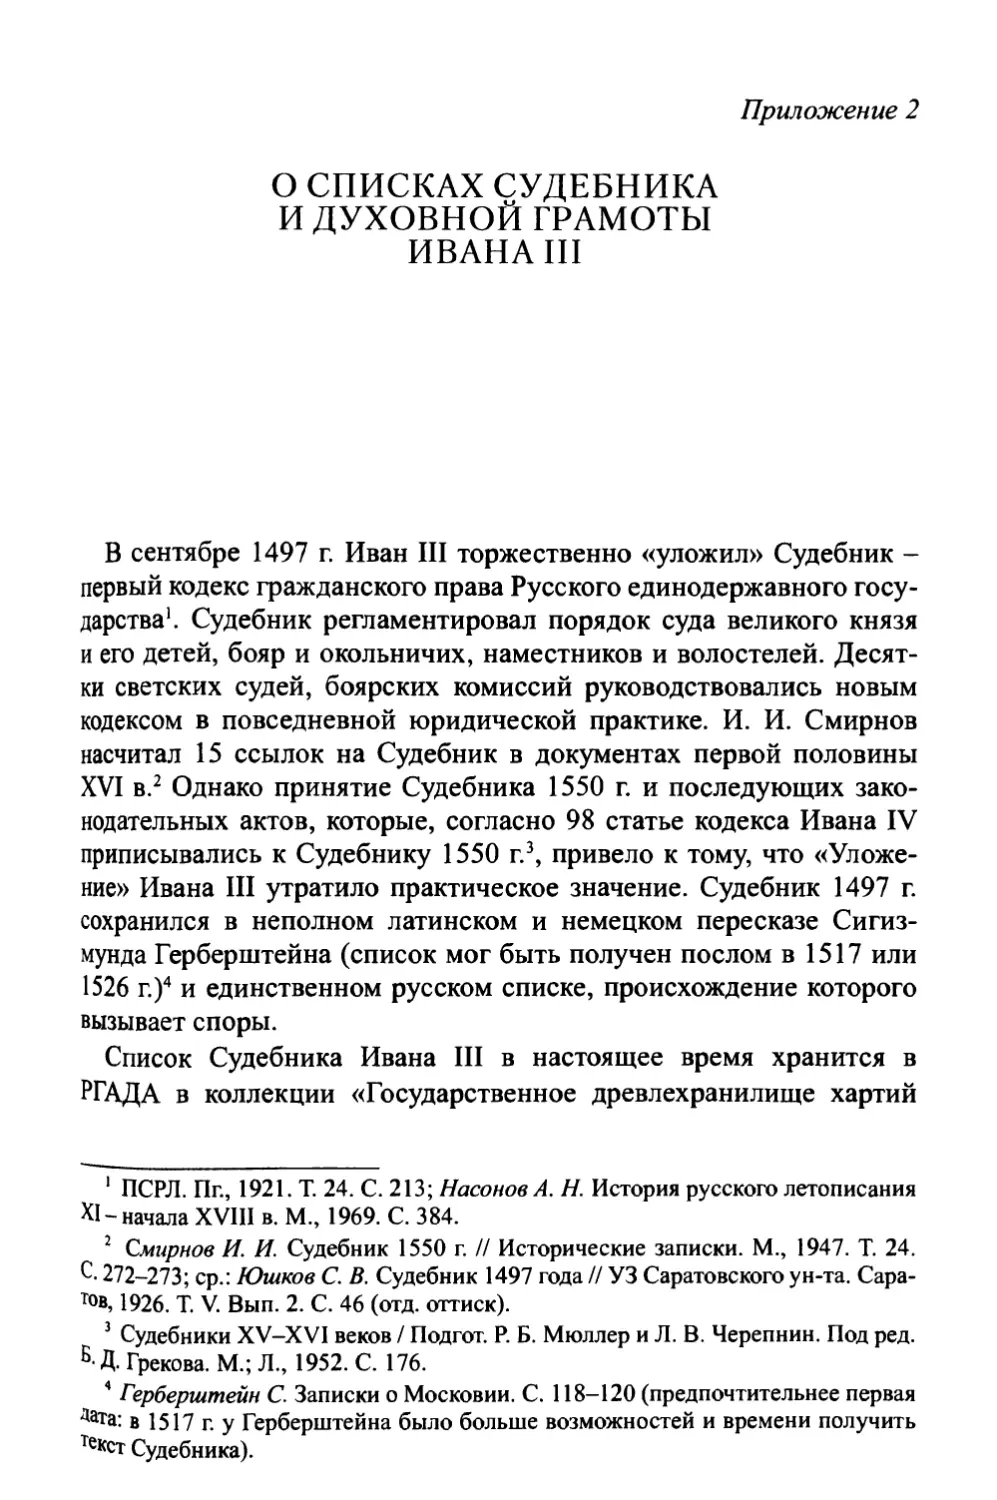 Приложение 2. О списках Судебника и духовной грамоты Ивана III